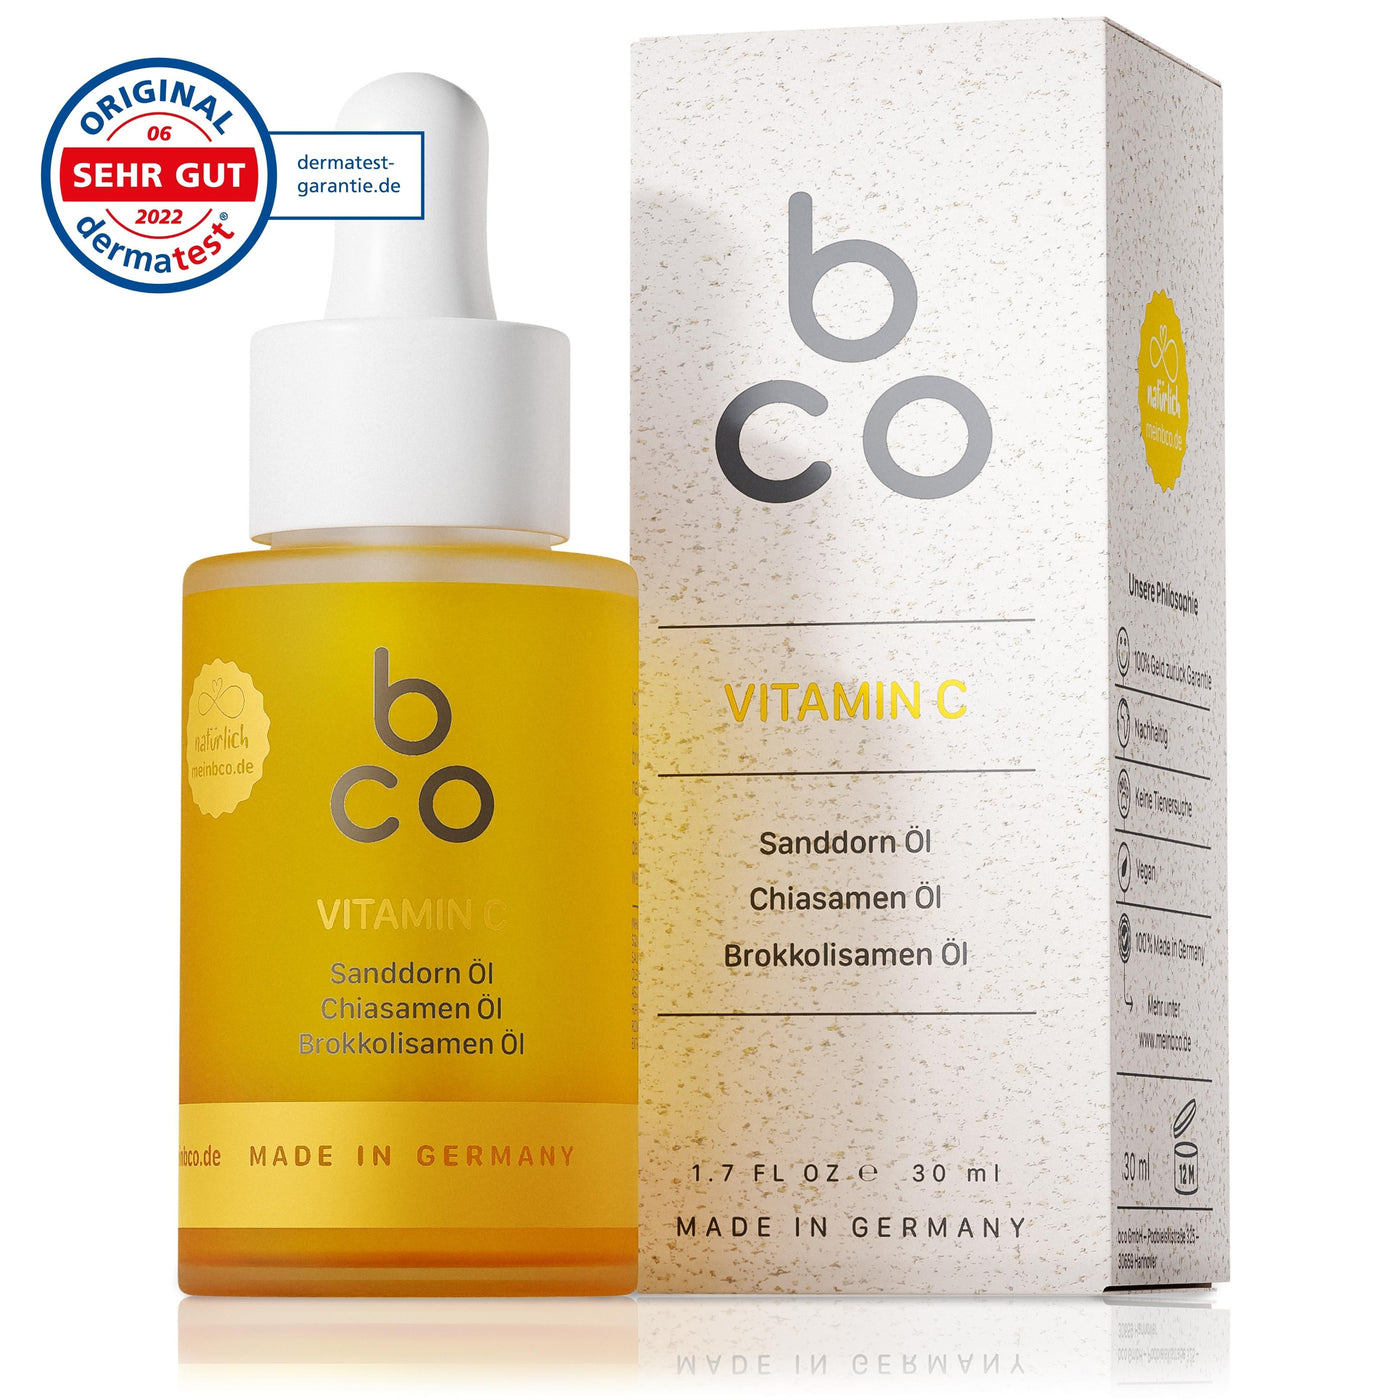 Natürliche Hautpflege bco vitamin c, Vorderseite